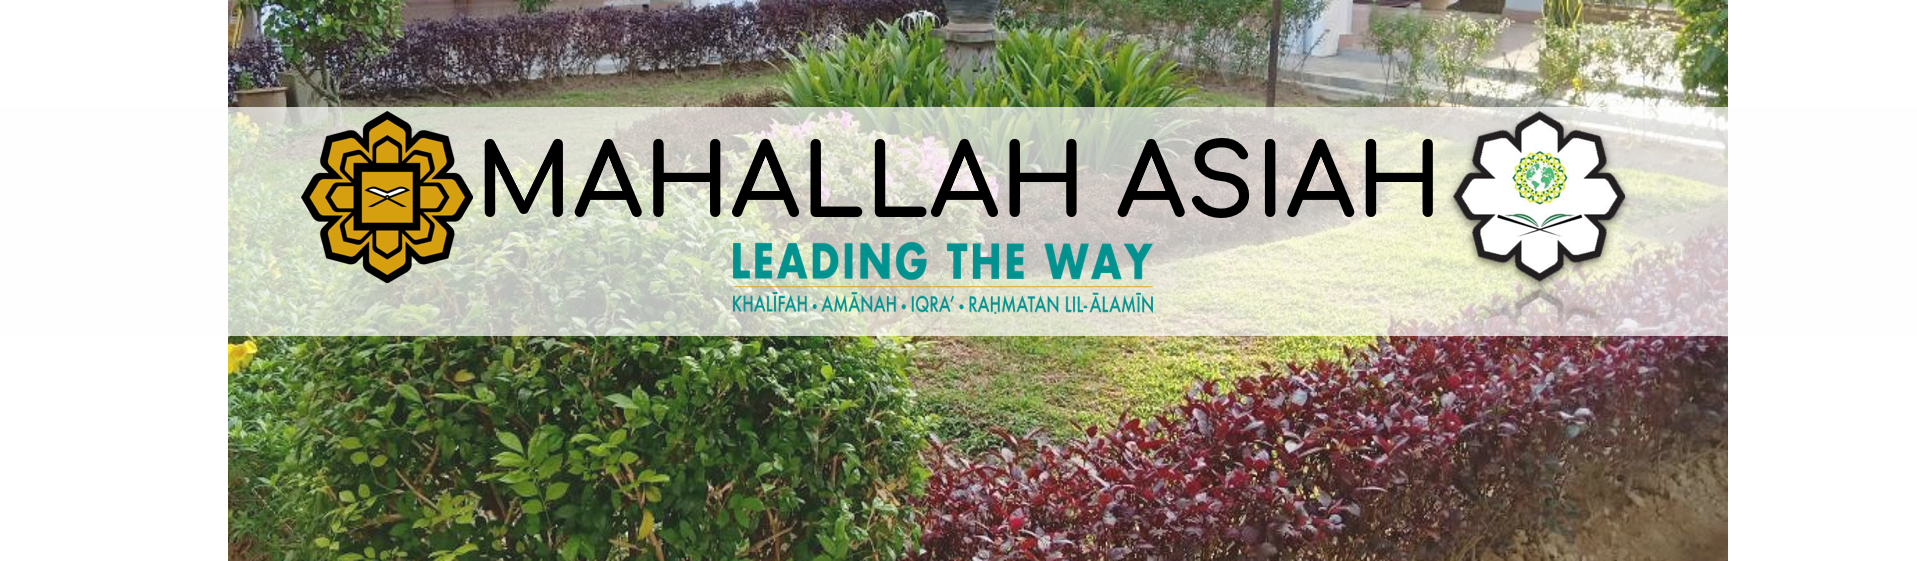 MAHALLAH ASIAH (COLLEGE)